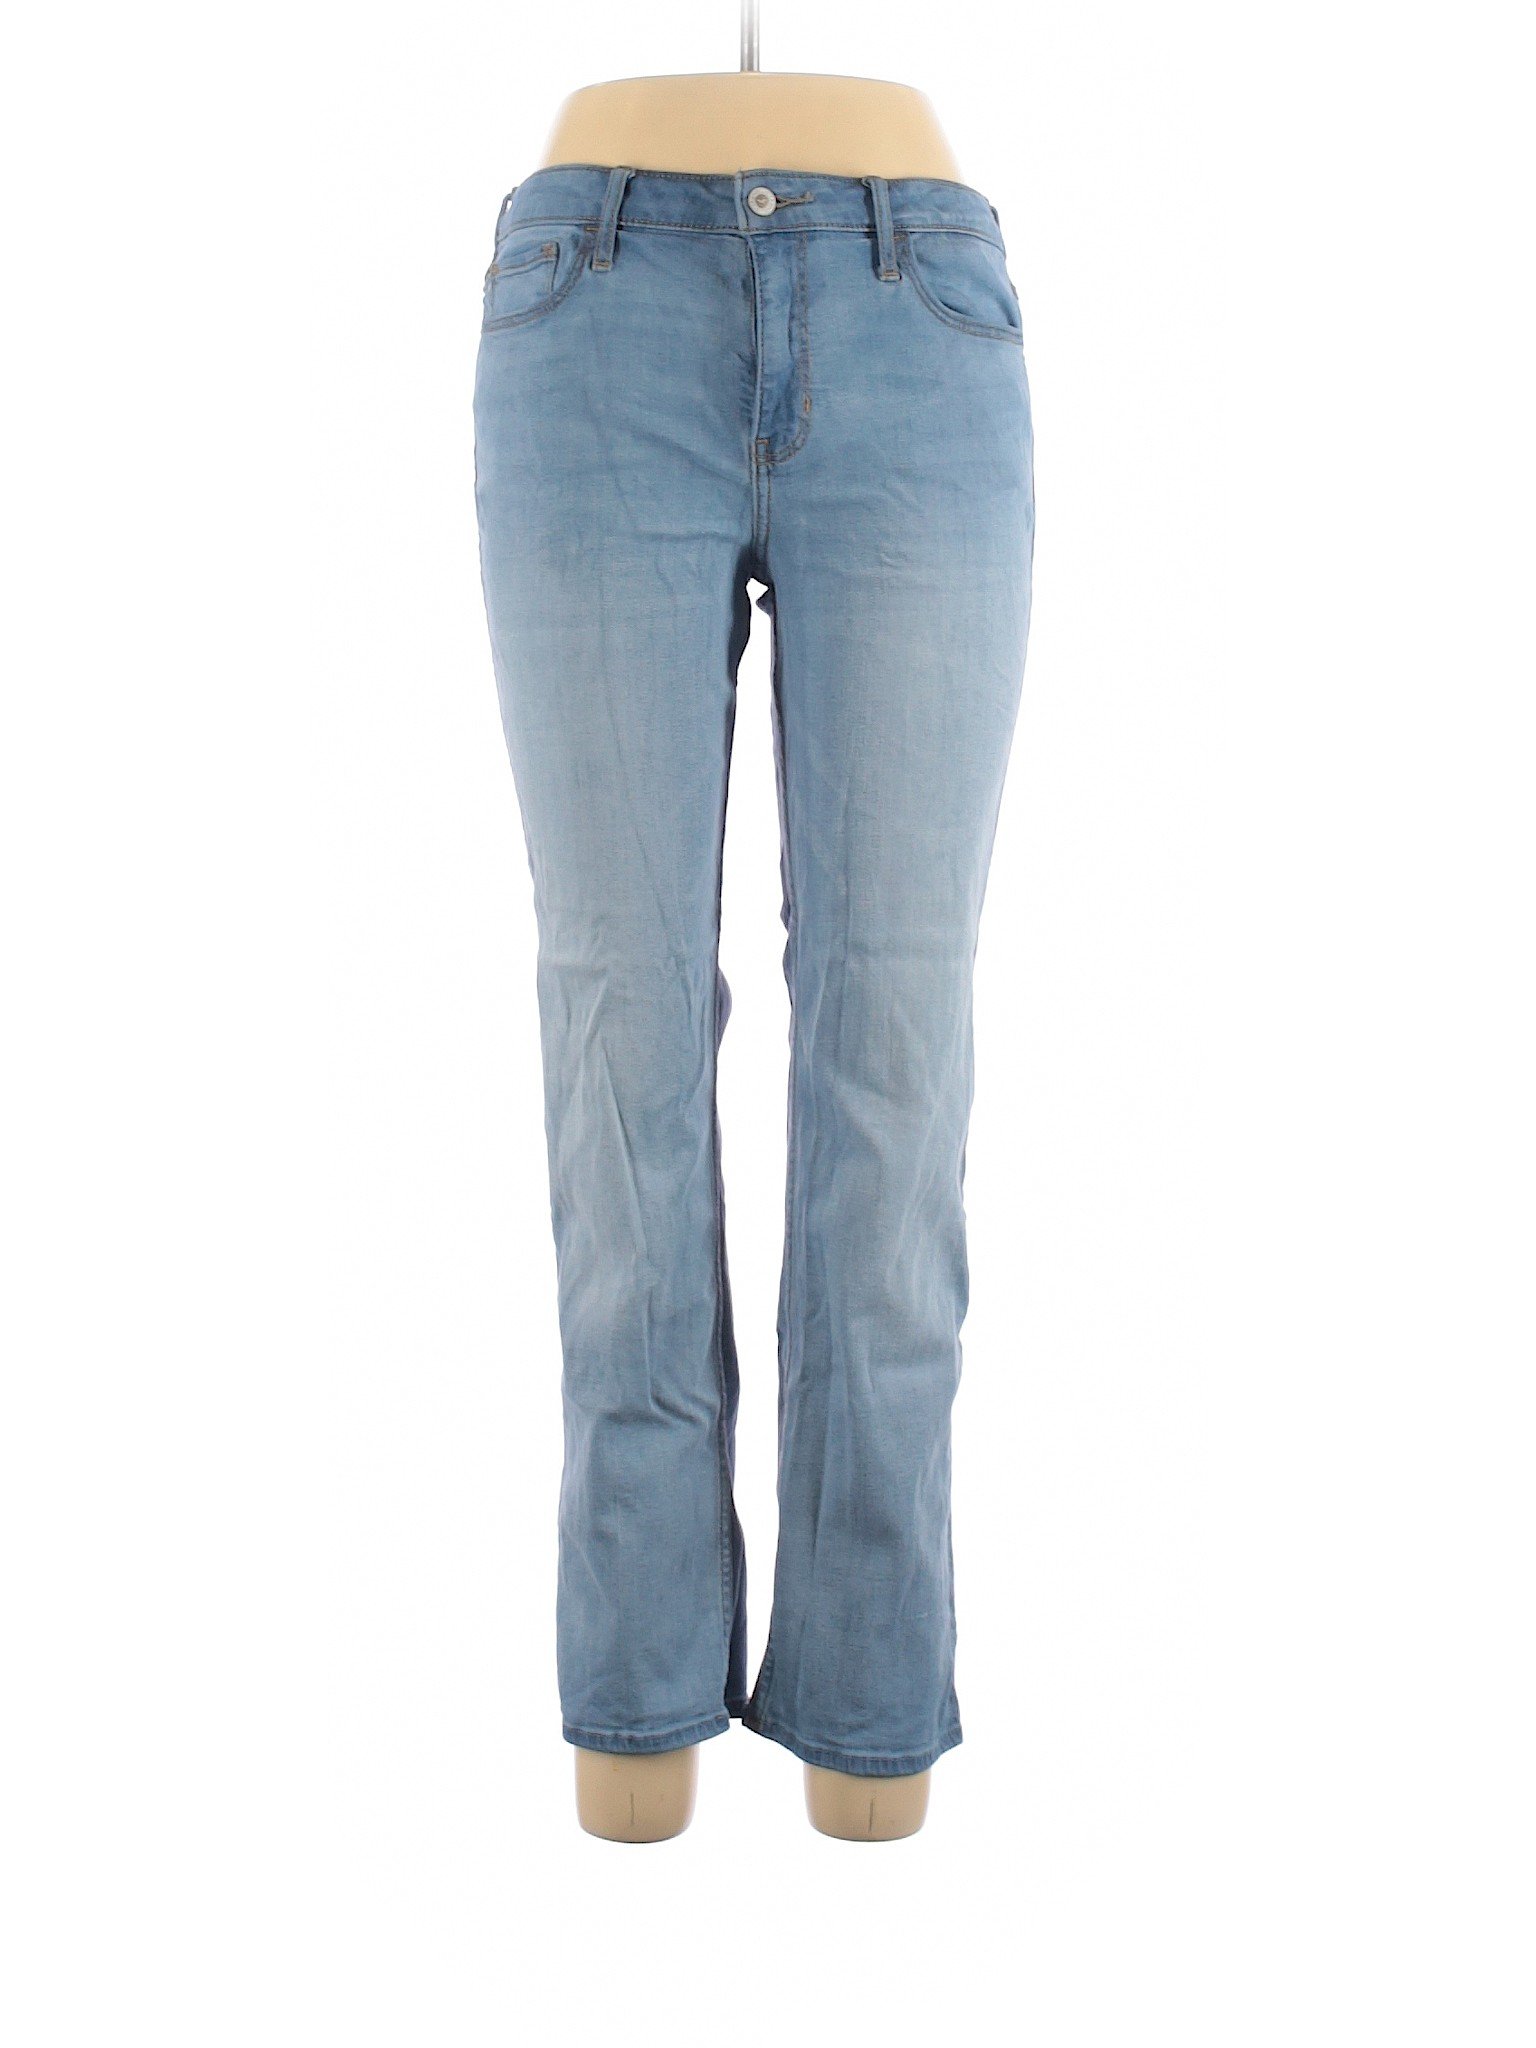 Hollister Women Blue Jeans 11 | eBay